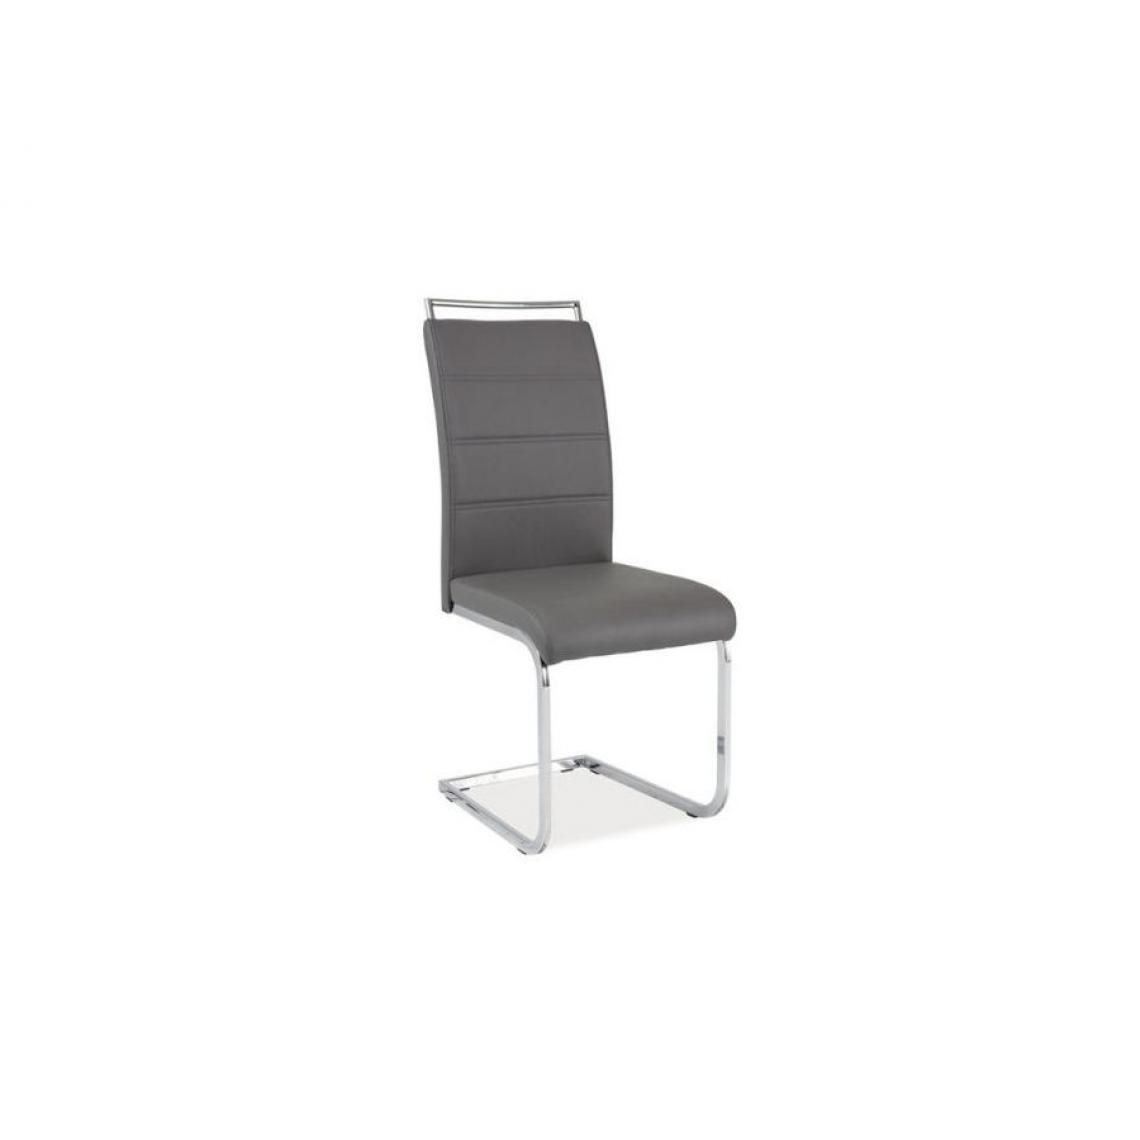 Hucoco - SHYRA | Chaise bicolore style moderne | Dimensions 102x41x42 cm | Rembourrage en cuir écologique | Chaise salle à manger - Gris - Chaises